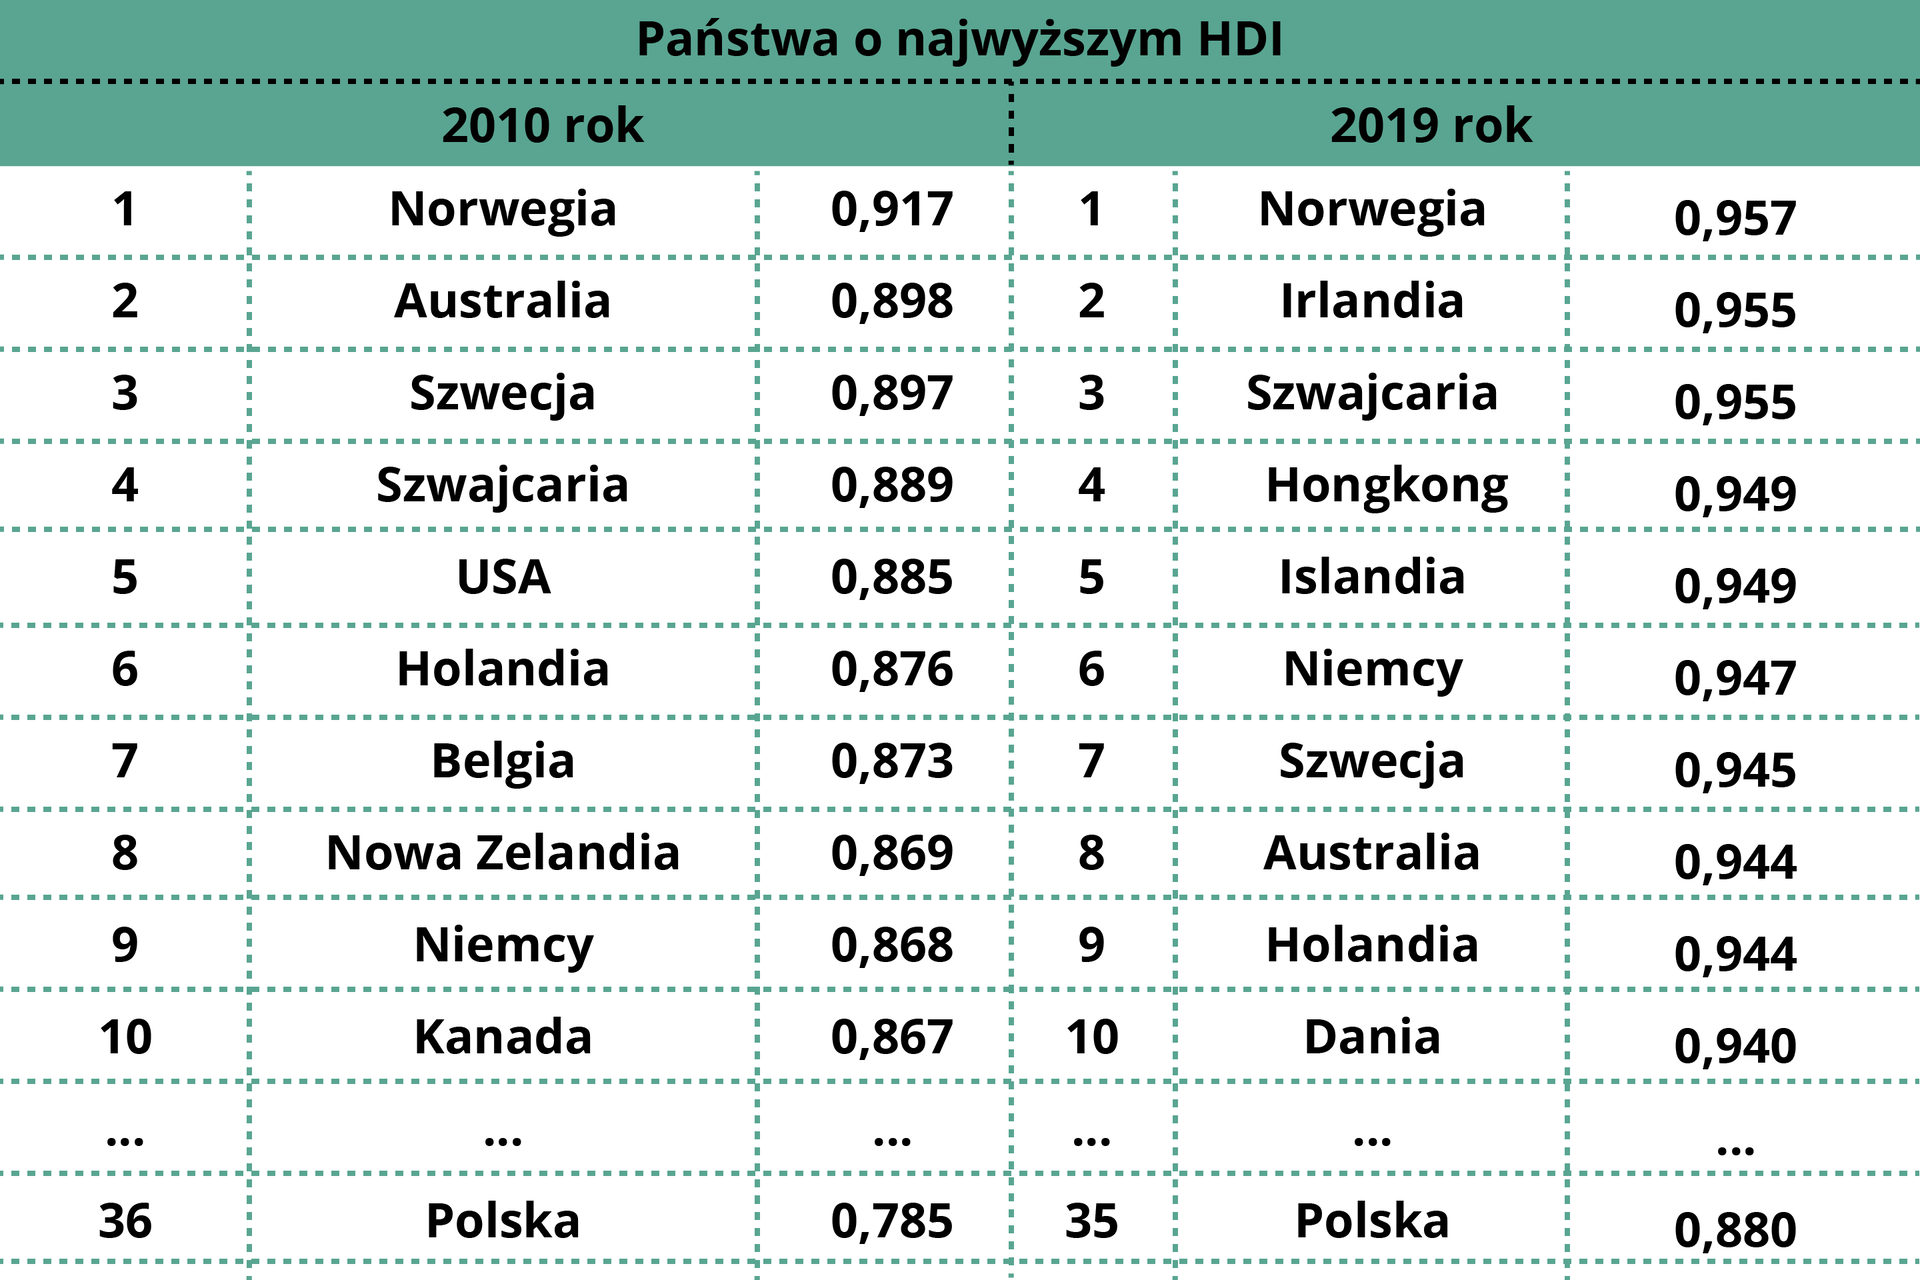 Tabela przedstawia państwa o najwyższym HDI.  W 2010 roku pierwsze miejsce zajmowała Norwegia z współczynnikiem w wysokości 0,917, drugie miejsce Australia – 0,898, trzecie miejsce Szwecja – 0,897, czwarte miejsce Szwajcaria – 0,889, piąte miejsce USA - 0,885, szóste miejsce Holandia – 0,876, siódme miejsce Belgia – 0,873, ósme miejsce Nowa Zelandia – 0,869, dziewiąte miejsce Niemcy – 0,868,dziesiąte miejsce Kanada – 0,867. Polska w 2010 roku było na 36 miejscu współczynnikiem w wysokości 0,785. W 2019 roku pierwsze miejsce w tabeli zajmowała Norwegia z współczynnikiem w wysokości 0,957, na drugim miejscu Irlandia – 0,955, na trzecim miejscu Szwajcaria – 0,955, na czwartym miejscu Hongkong – 0,949, na piątym miejscu Islandia – 0,949, na szóstym miejscu Niemcy – 0,947, na siódmym miejscu Szwecja – 0,945, na ósmym miejscu Australia – 0,944, na dziewiątym miejscu Holandia – 0,944, na miejscu Dania – 0,940. W 2019 roku Polska była na 35 miejscu z współczynnikiem w wysokości 0,880.